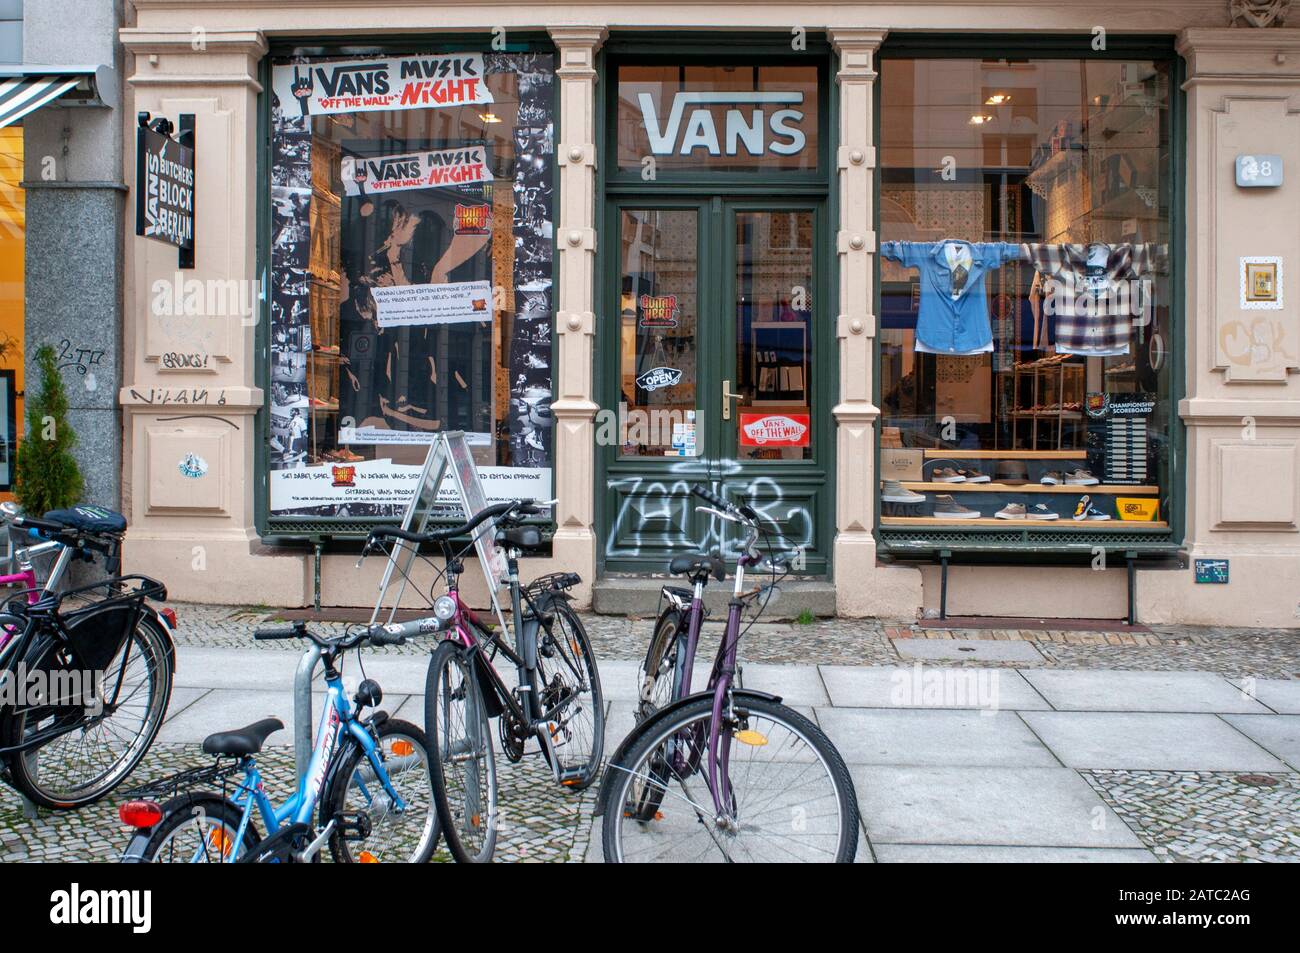 Fourgons vintage clotes shop dans le quartier de Kreuzberg, Berlin, Allemagne Banque D'Images